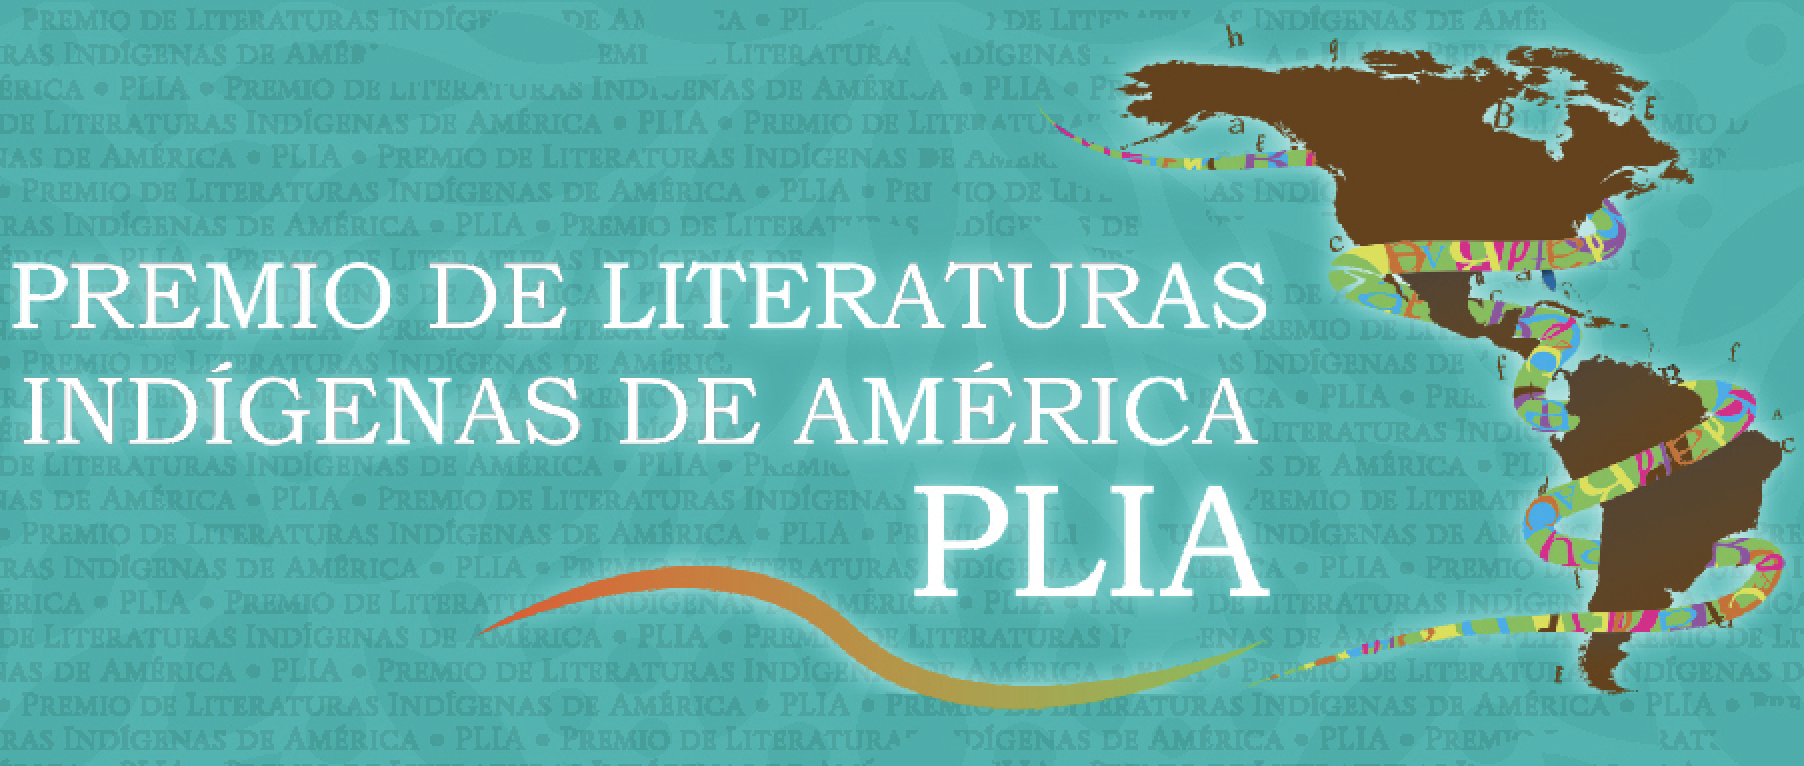 El Premio de Literaturas Indígenas de América abre su décima convocatoria